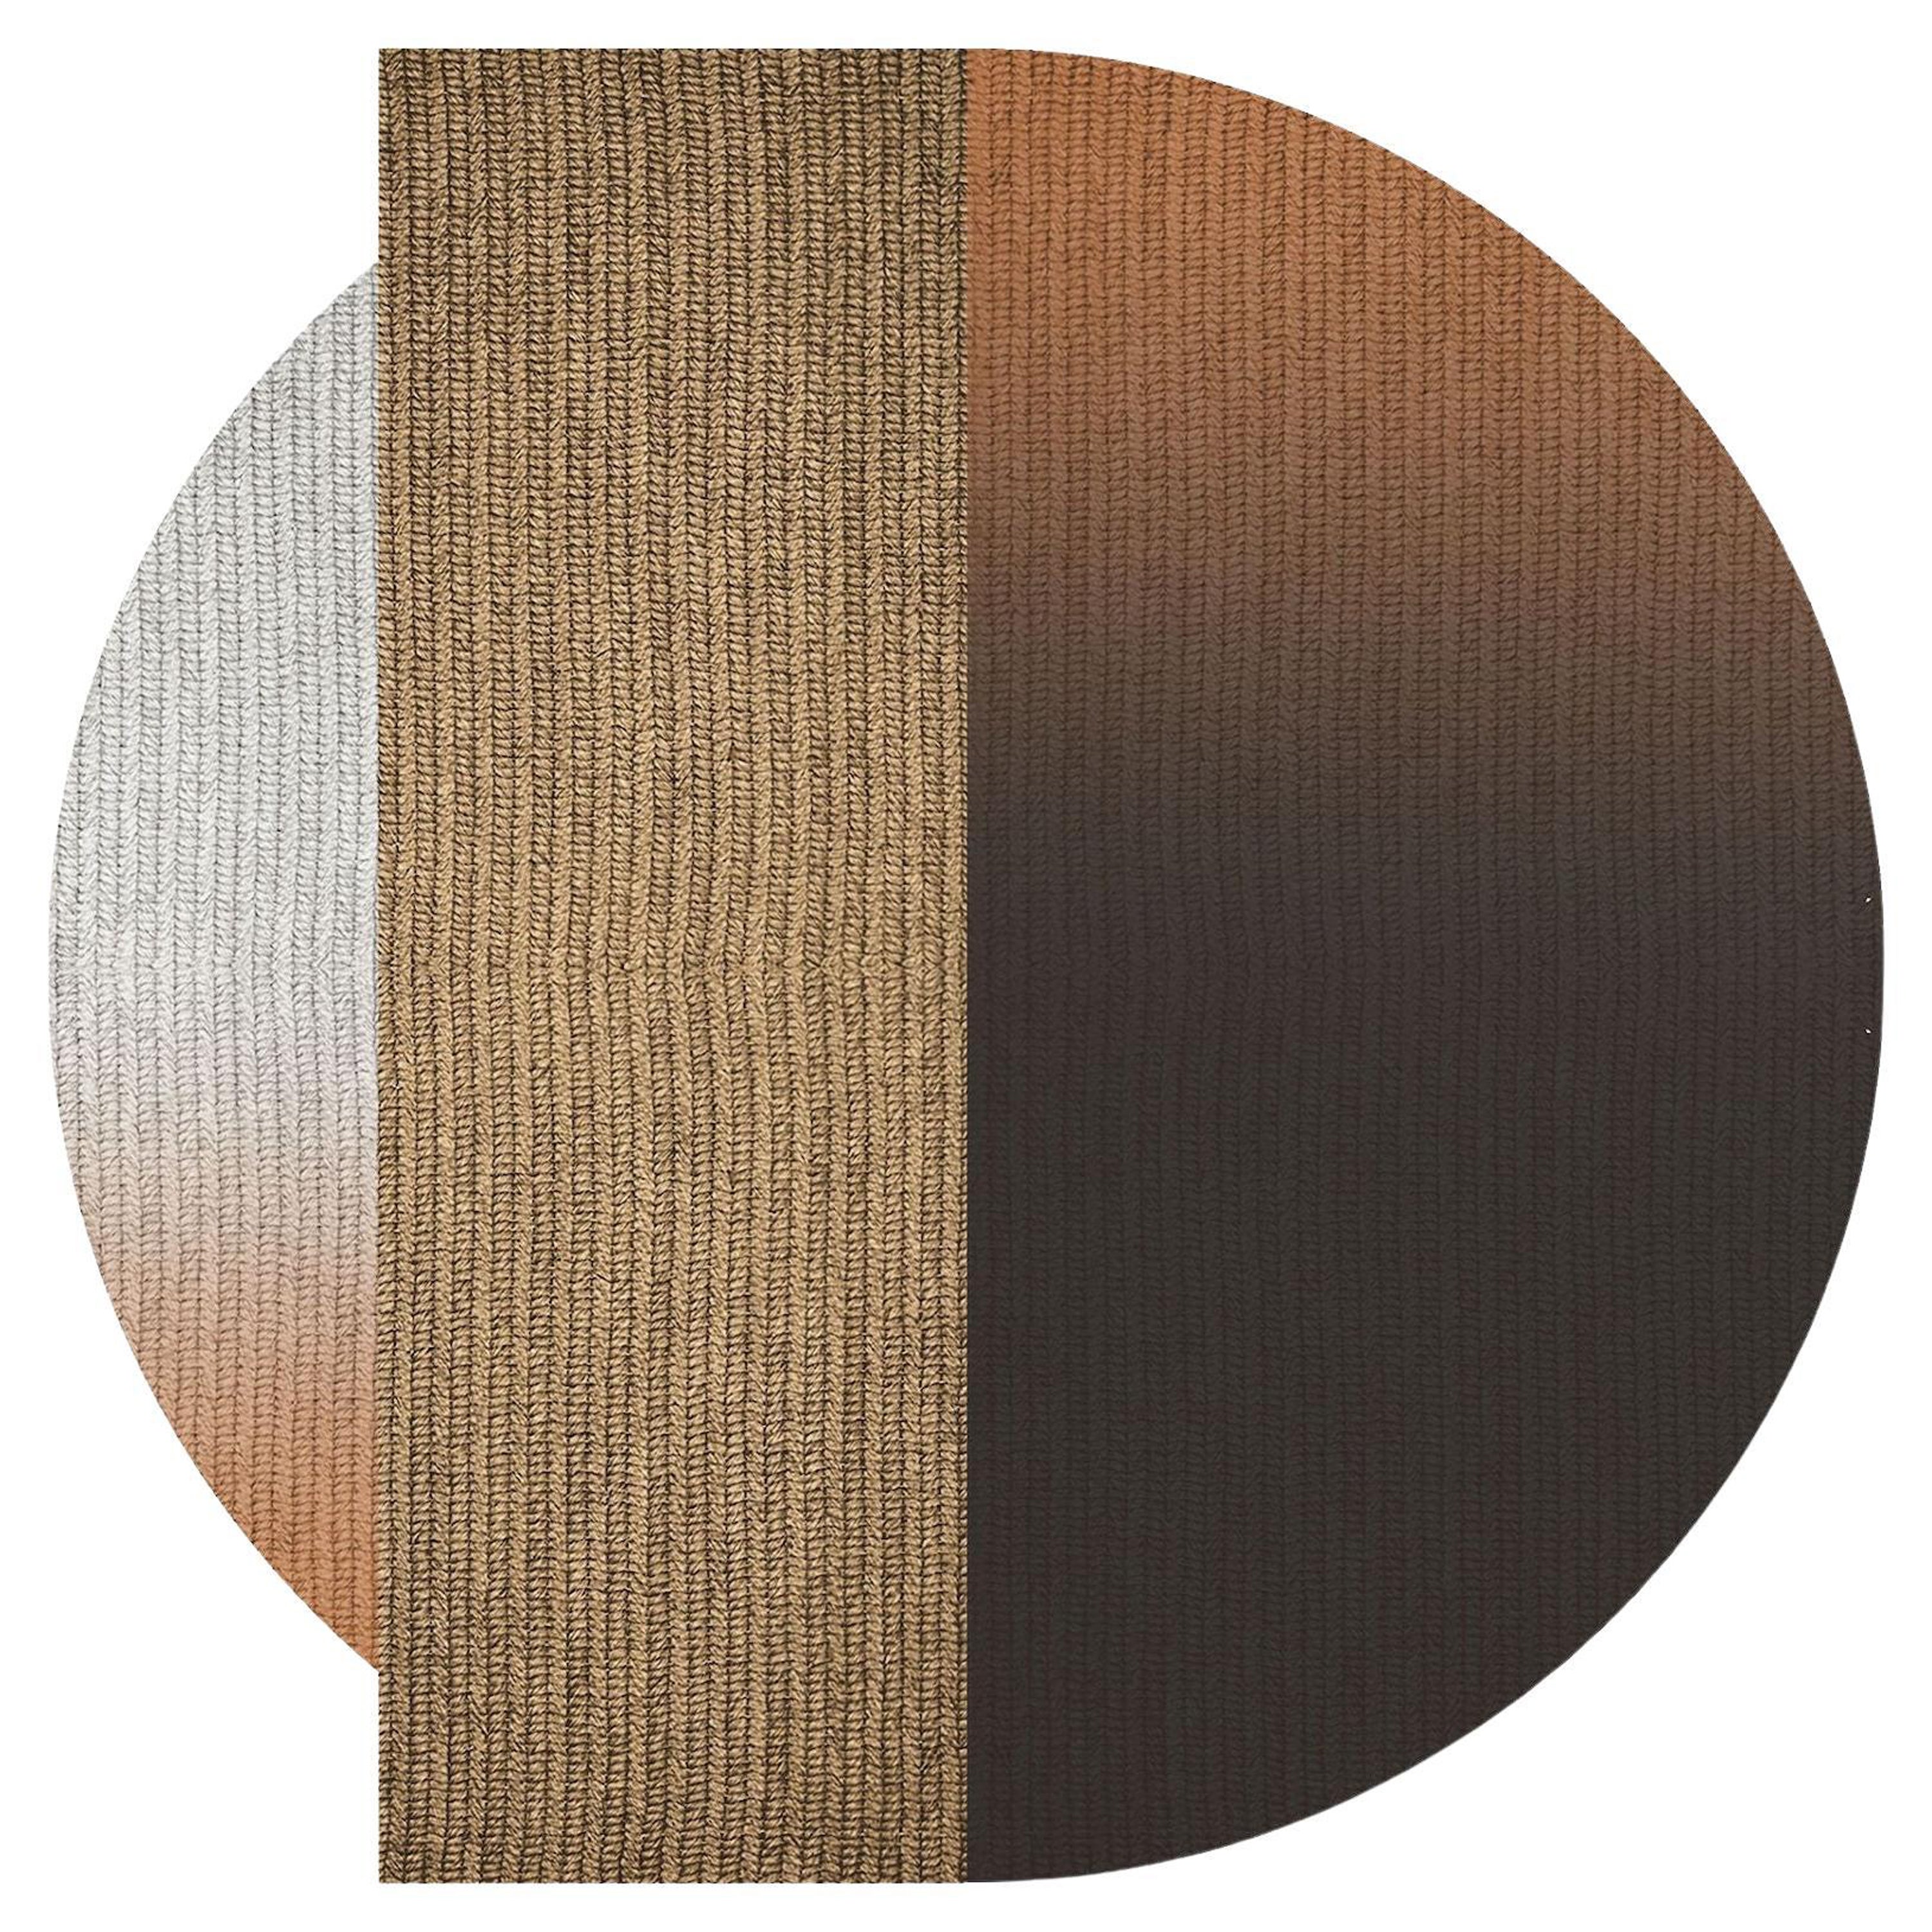 Teppich 'Flux' aus Abaca, Farbe 'Mahagoni', Ø 250cm von Claire Vos für Musett Design im Angebot